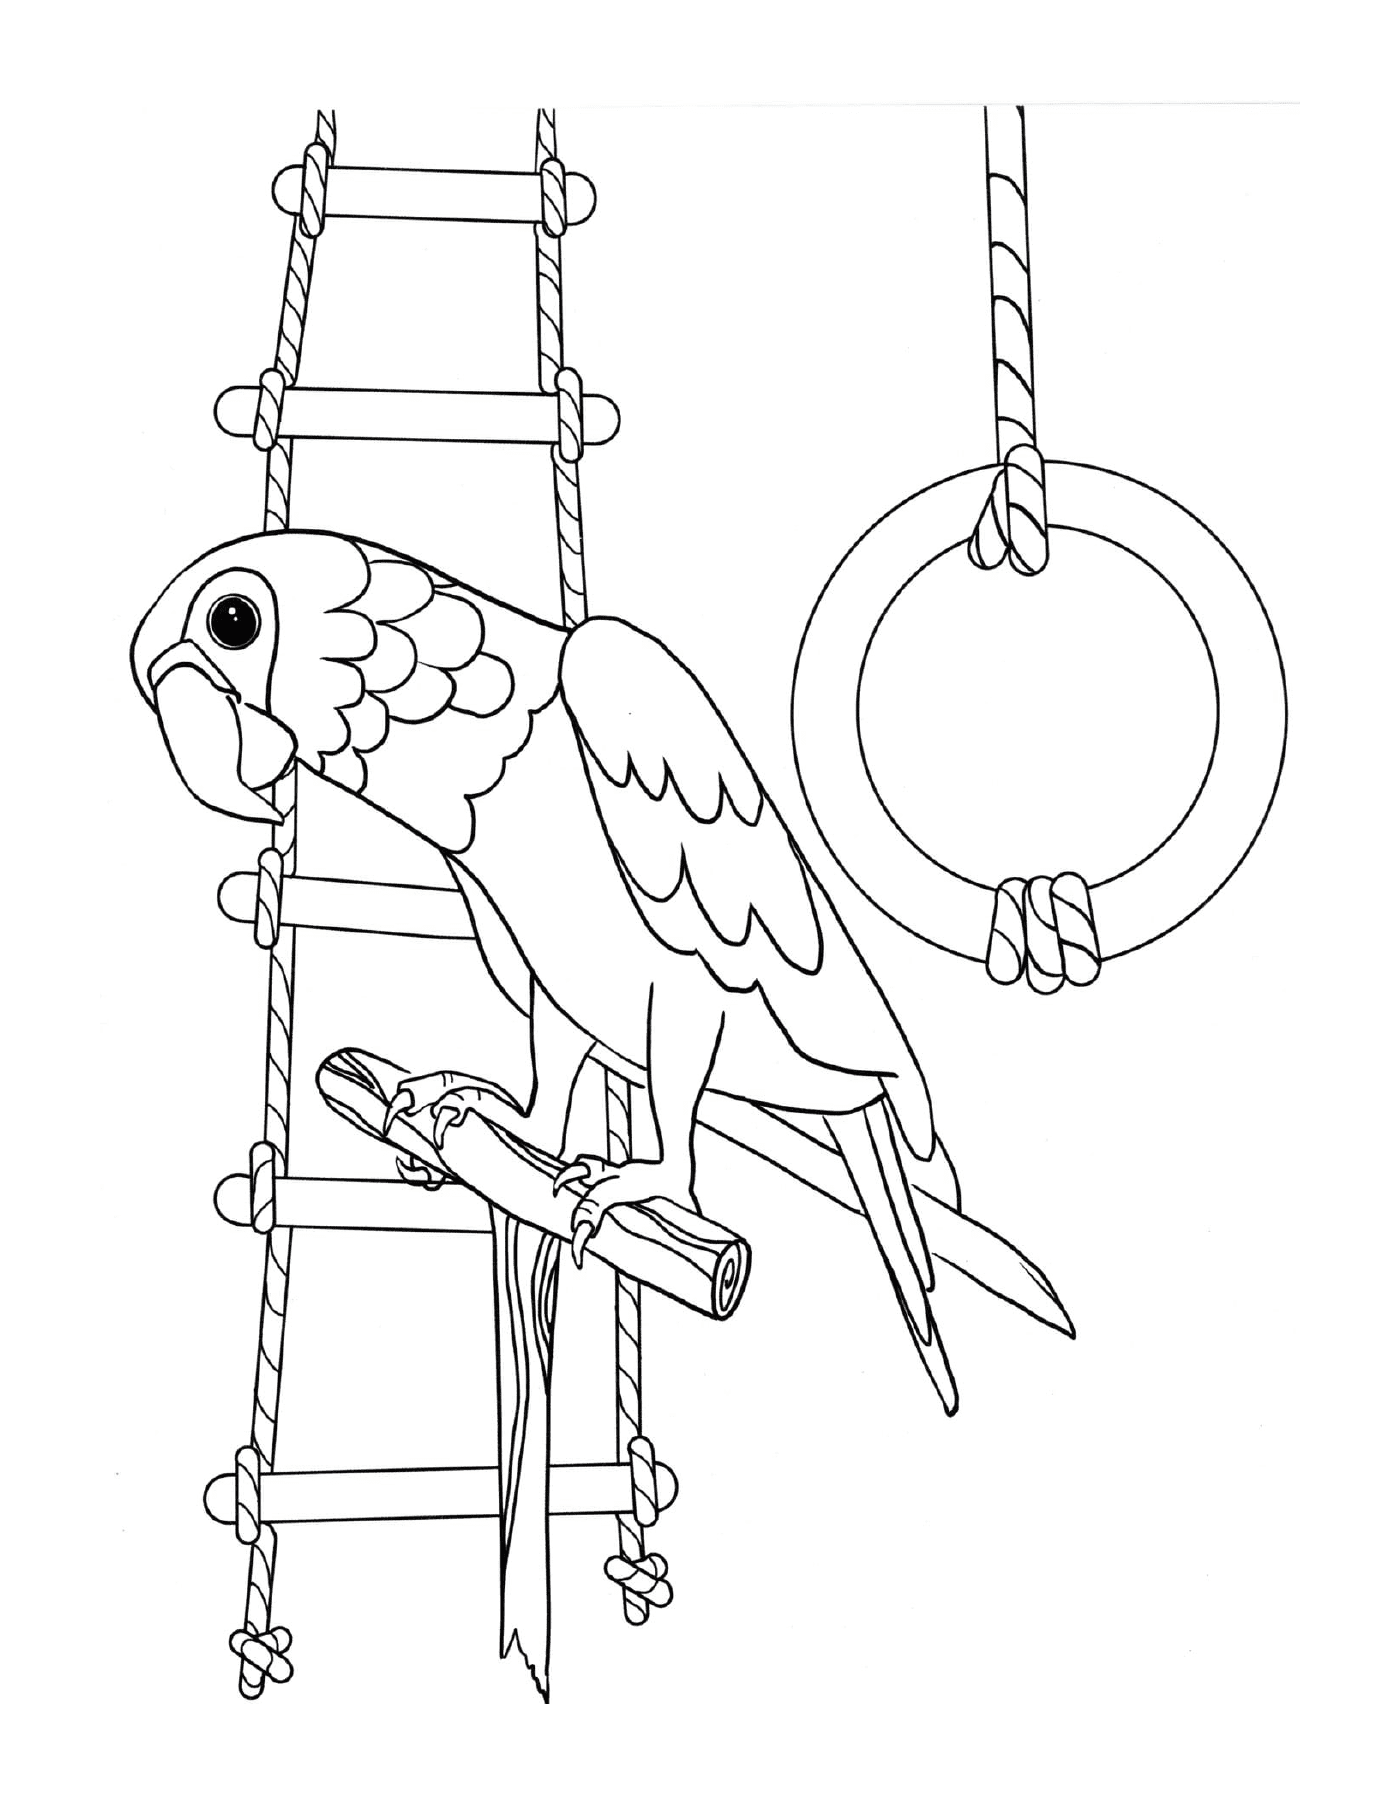   Perroquet qui aime jouer, oiseau perché sur une échelle 